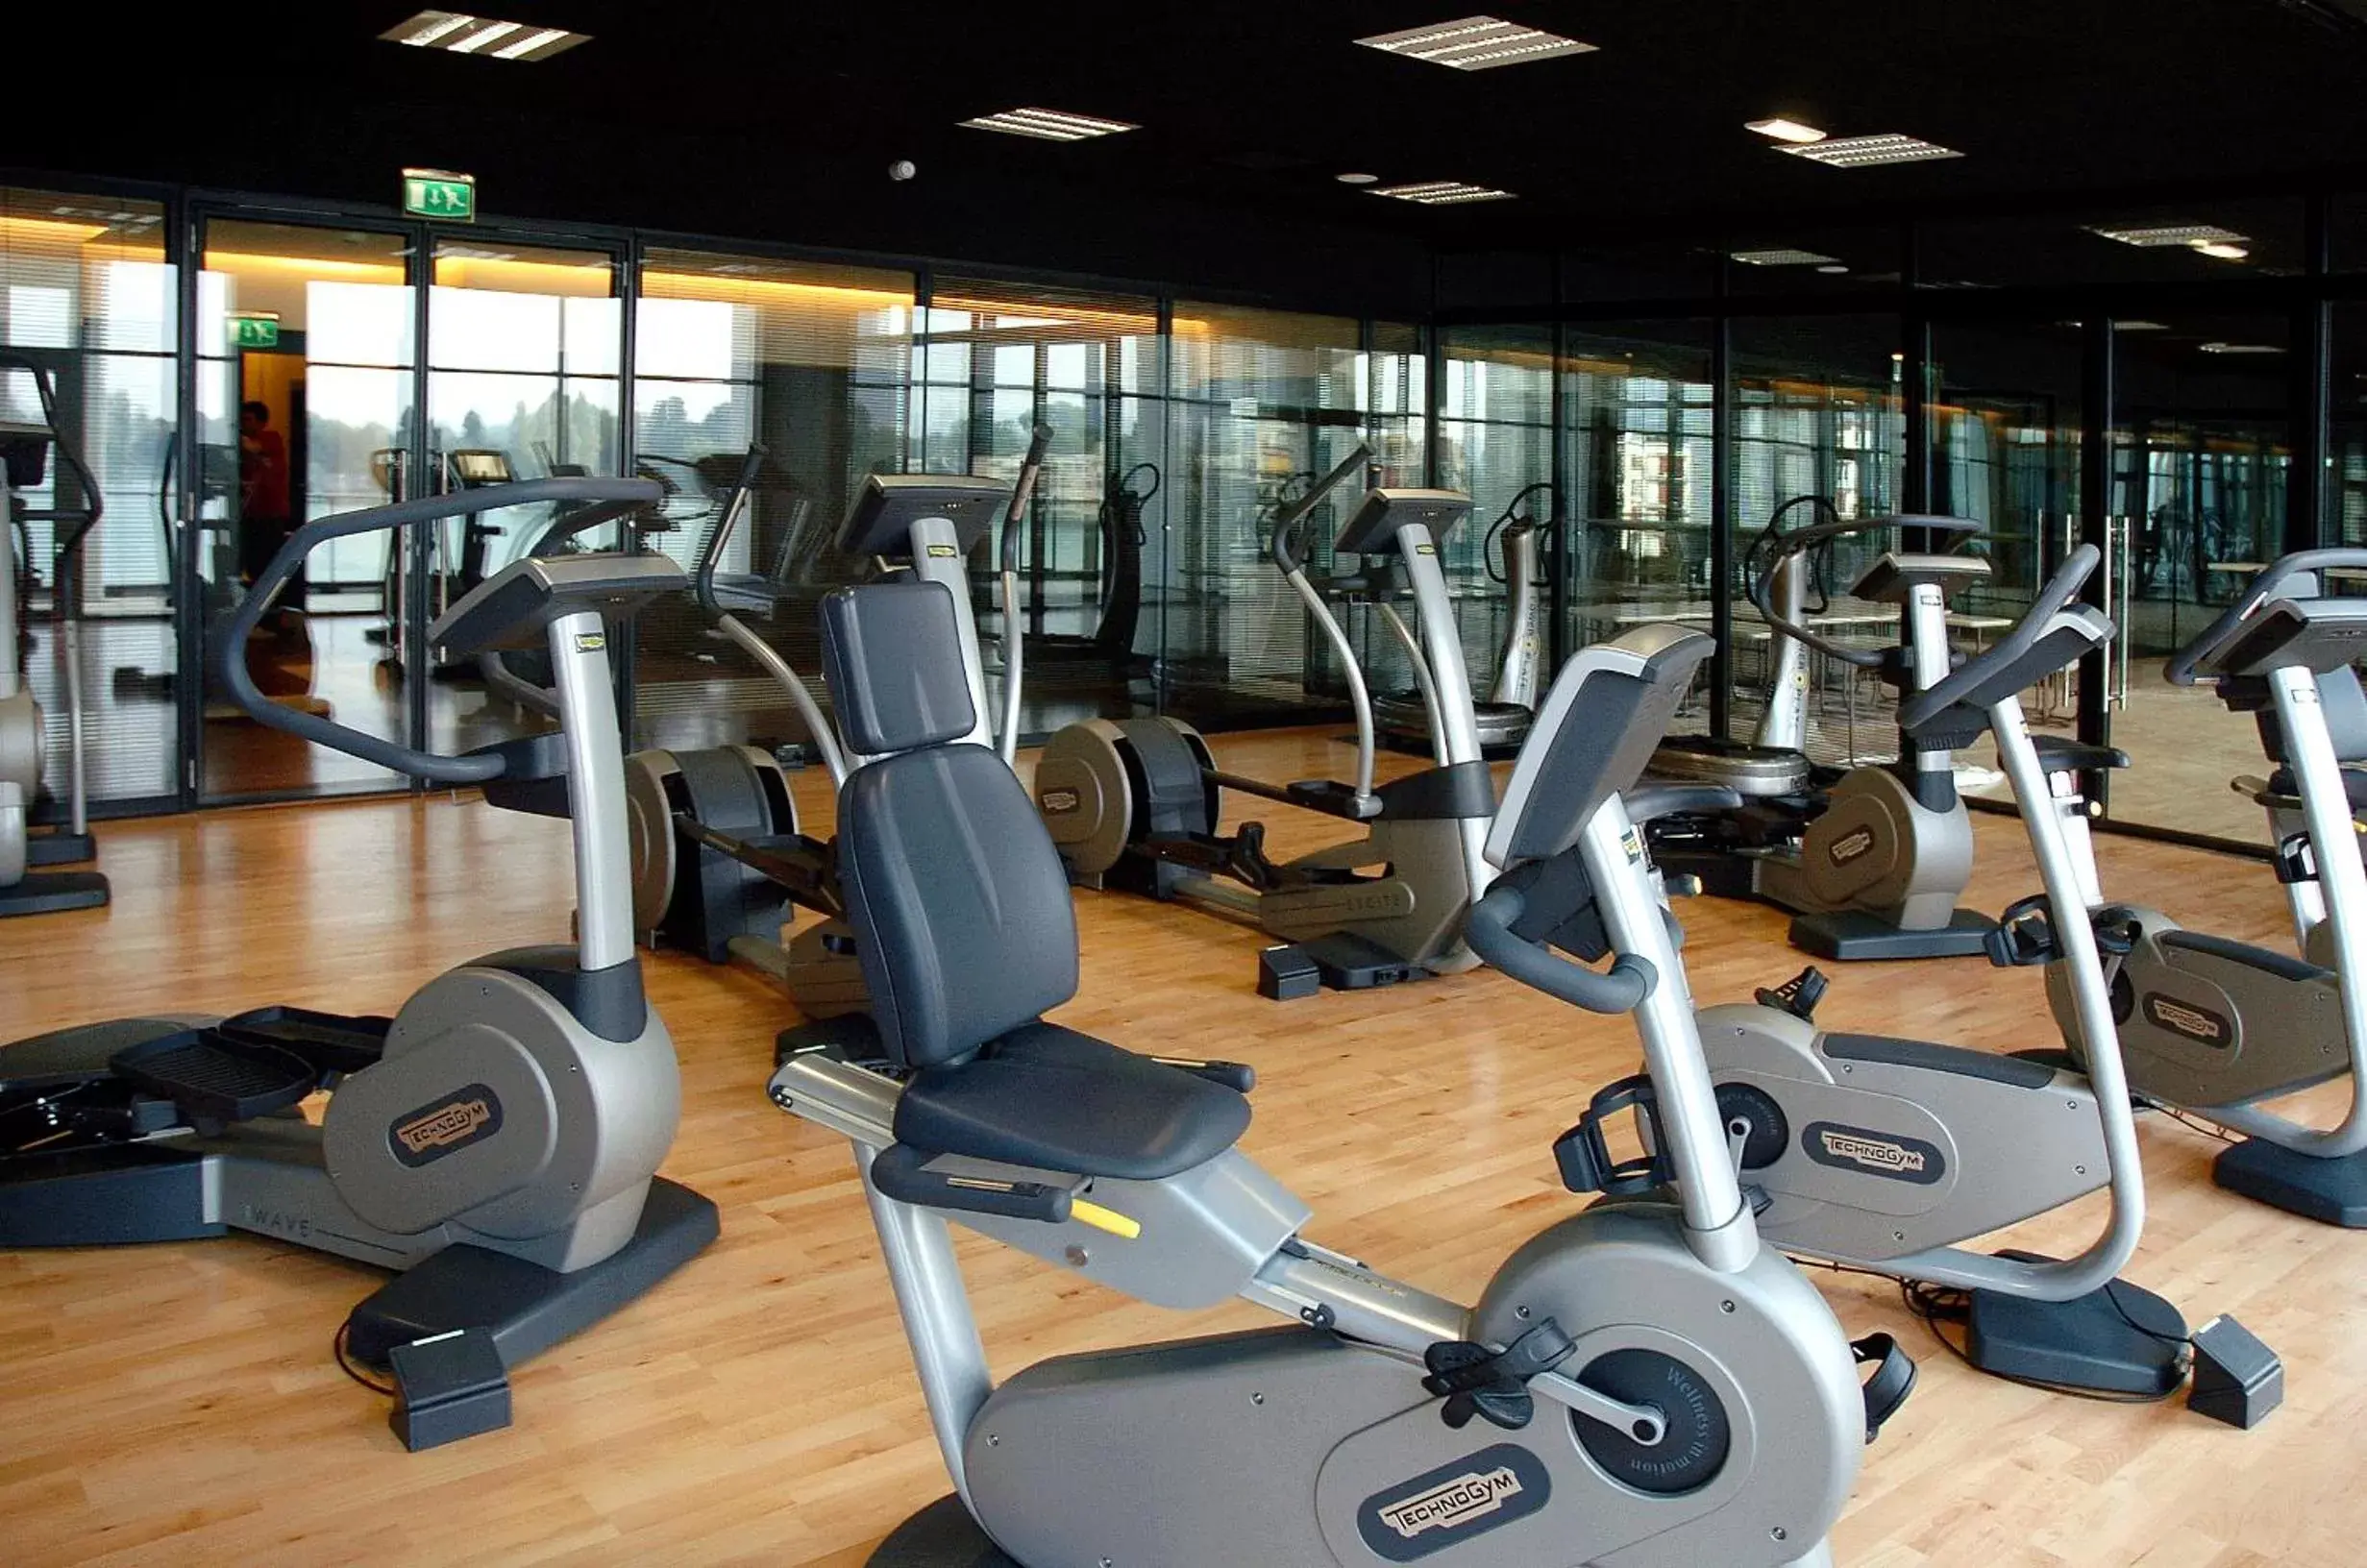 Fitness centre/facilities, Fitness Center/Facilities in Hôtel Barrière le Grand Hôtel Enghien-les-Bains